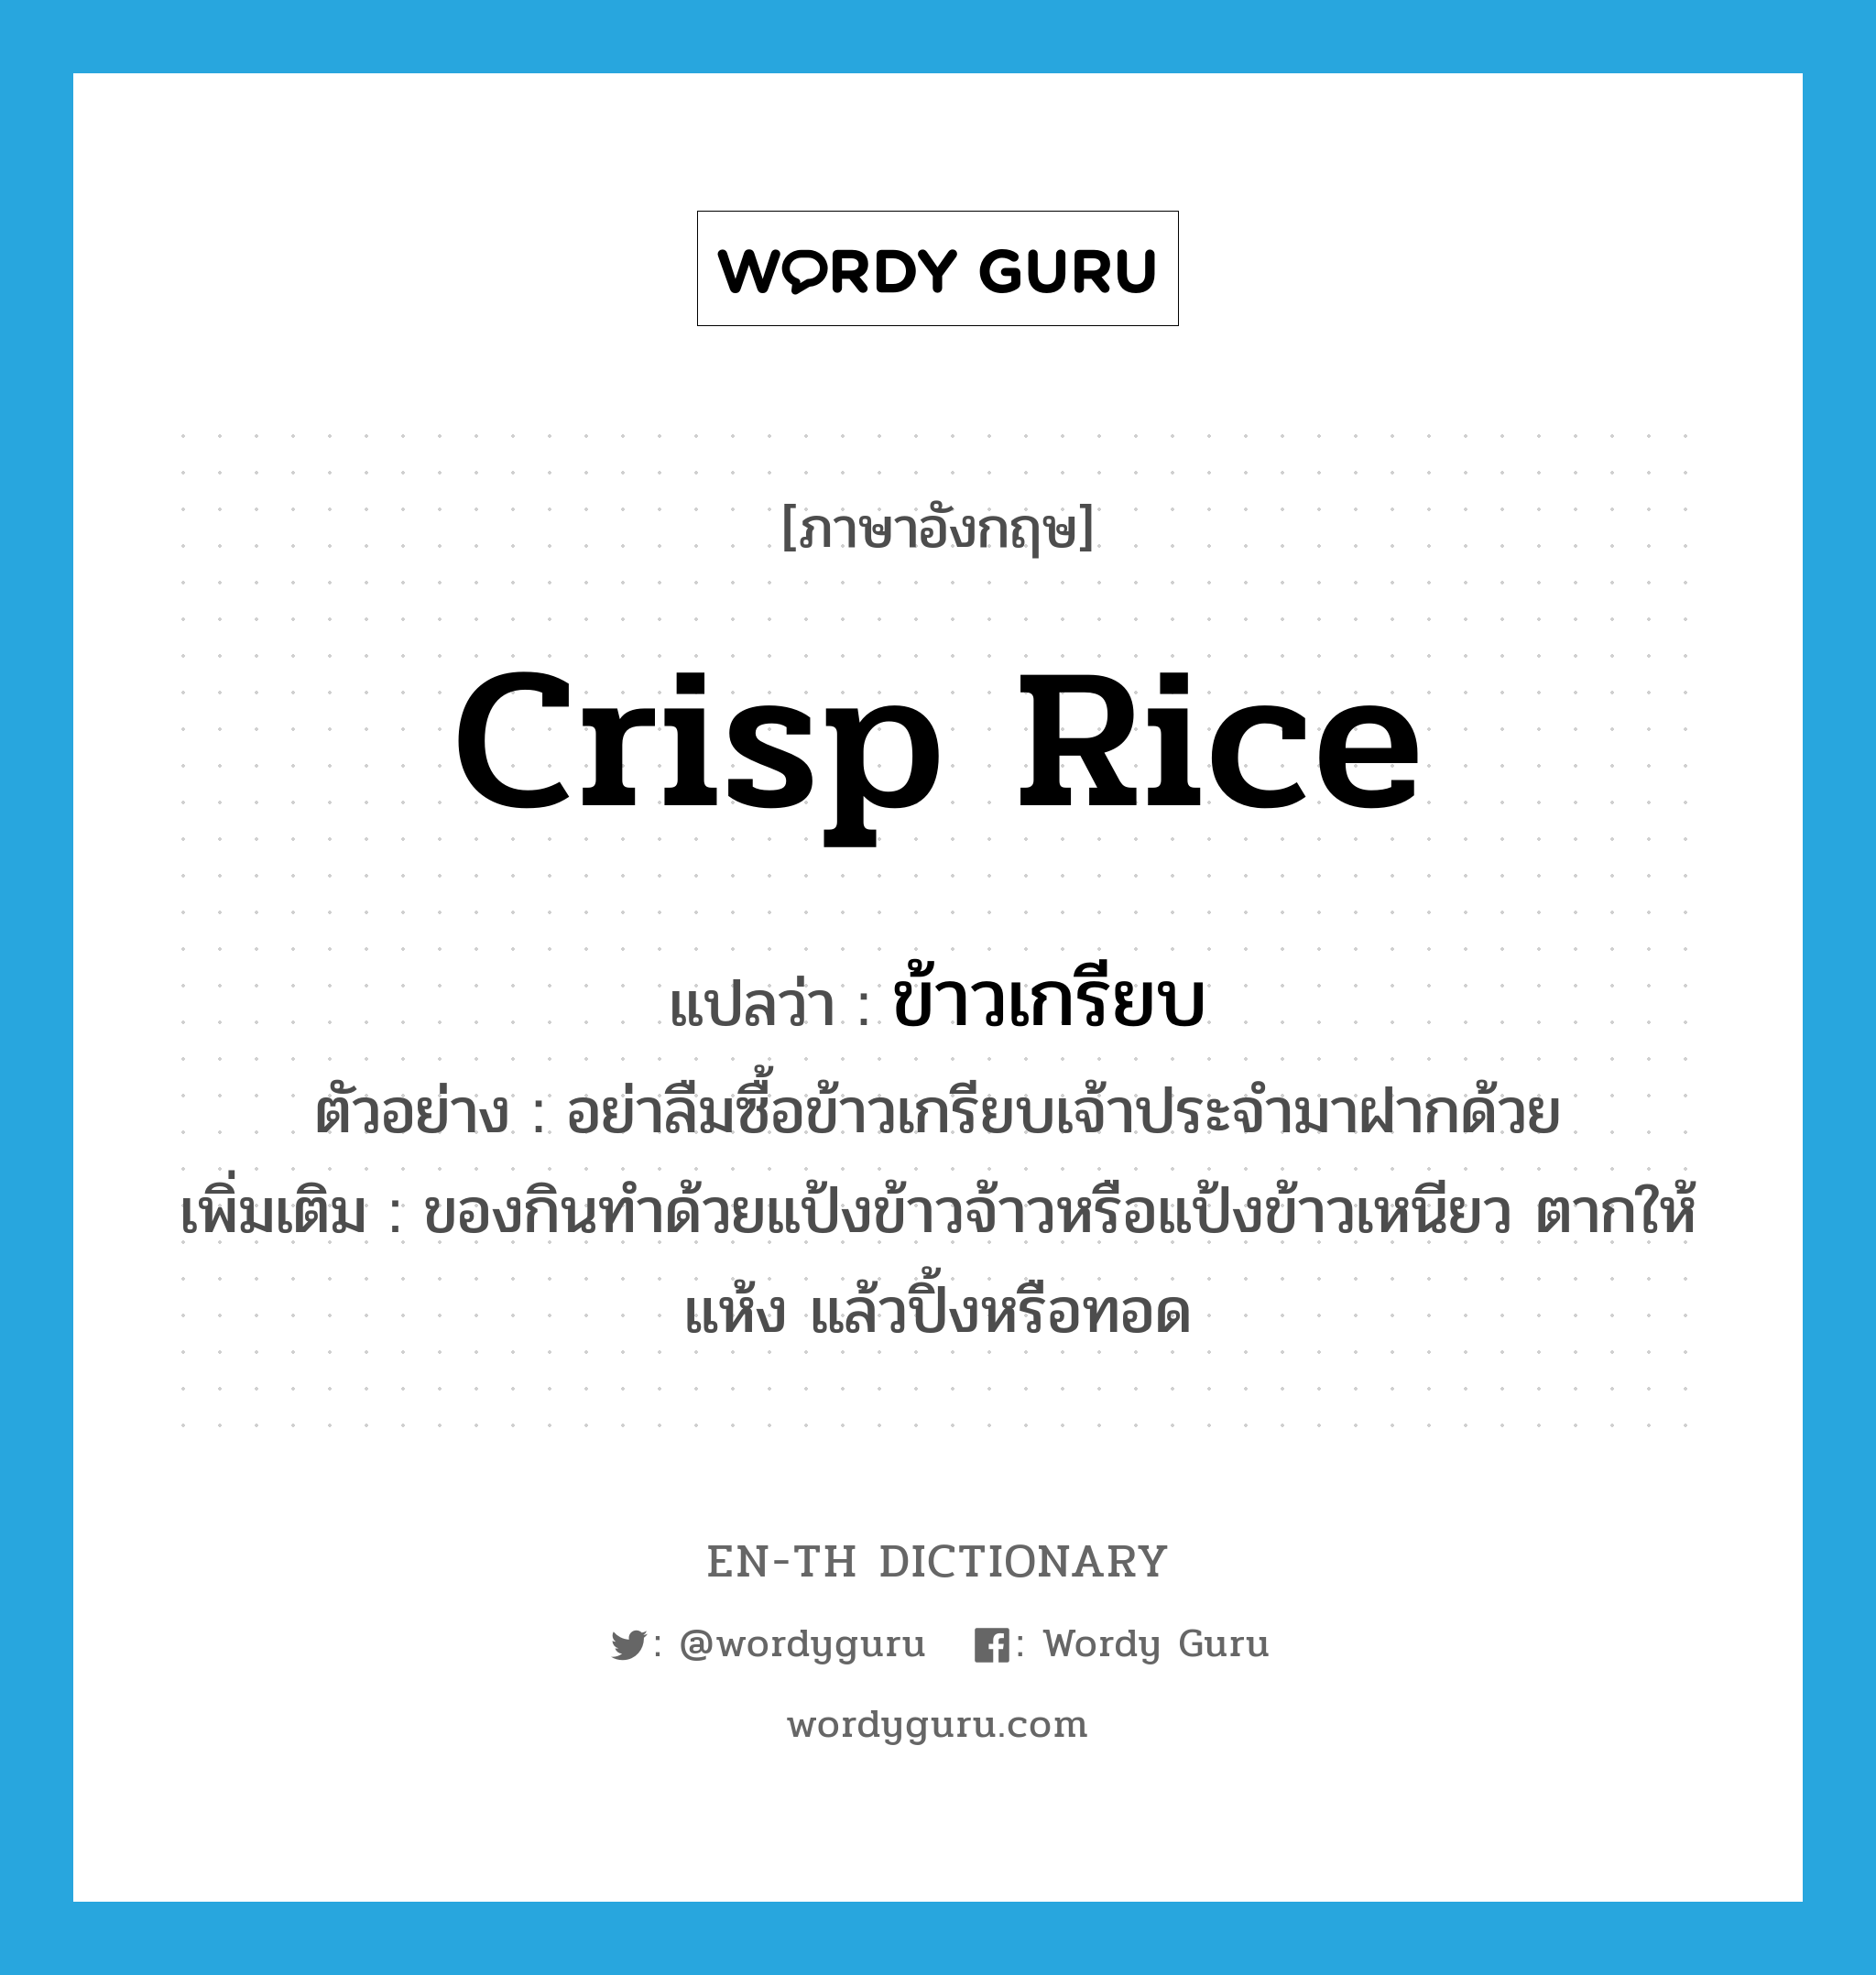 ข้าวเกรียบ ภาษาอังกฤษ?, คำศัพท์ภาษาอังกฤษ ข้าวเกรียบ แปลว่า crisp rice ประเภท N ตัวอย่าง อย่าลืมซื้อข้าวเกรียบเจ้าประจำมาฝากด้วย เพิ่มเติม ของกินทำด้วยแป้งข้าวจ้าวหรือแป้งข้าวเหนียว ตากให้แห้ง แล้วปิ้งหรือทอด หมวด N